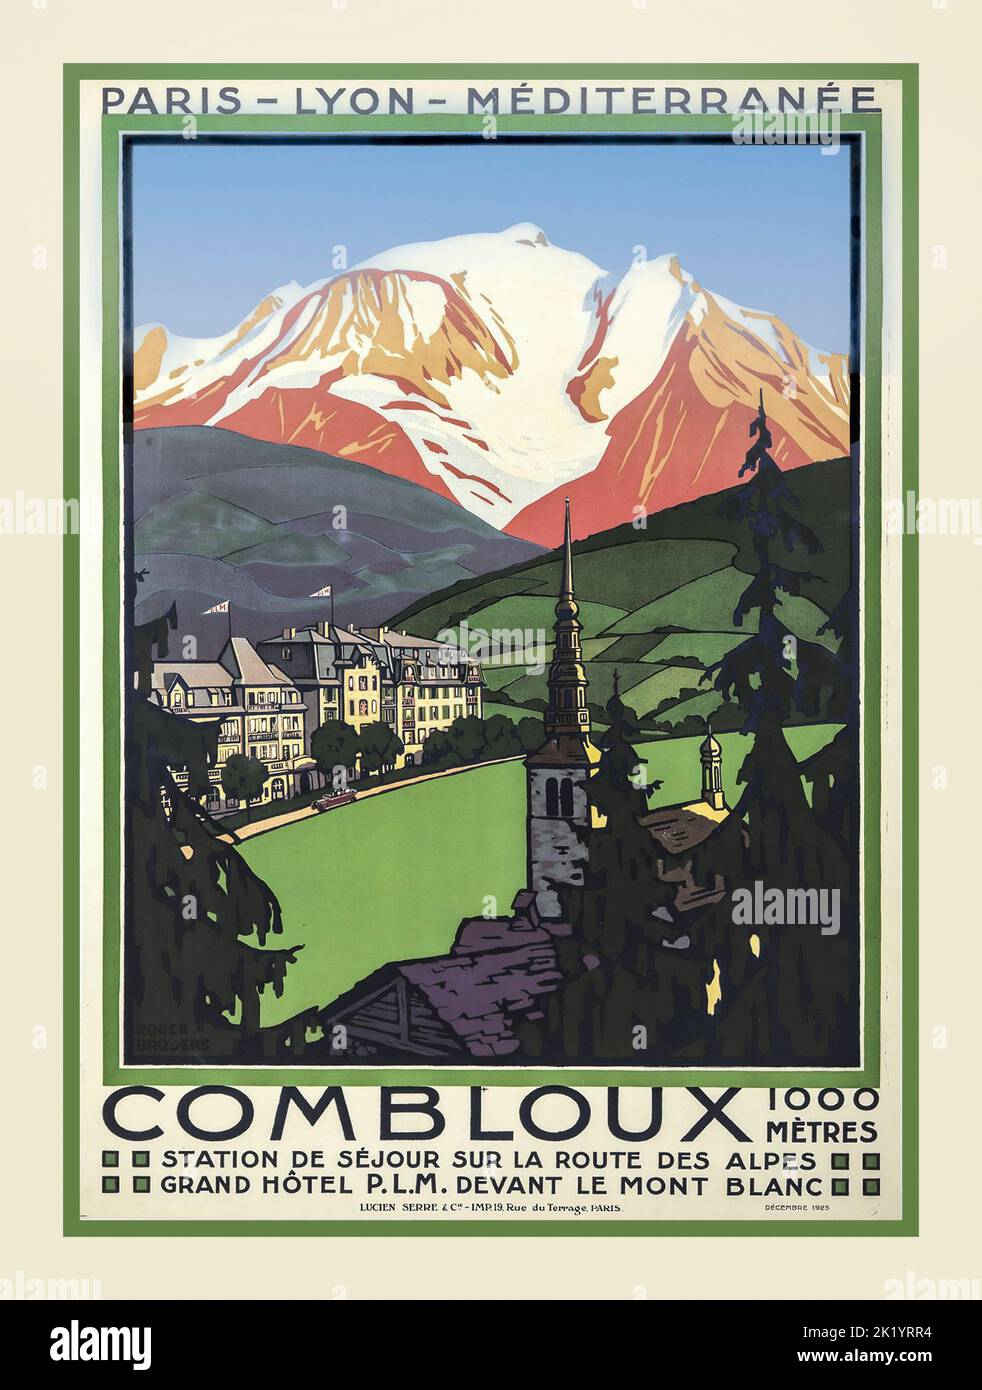 Vintage Travel Poster 1900s 'COMBLOUX' PLM French Rail Poster. Grand Hotel PLM Devant Le Mont Blanc Route des Alpes a 1000 metros de Francia Foto de stock